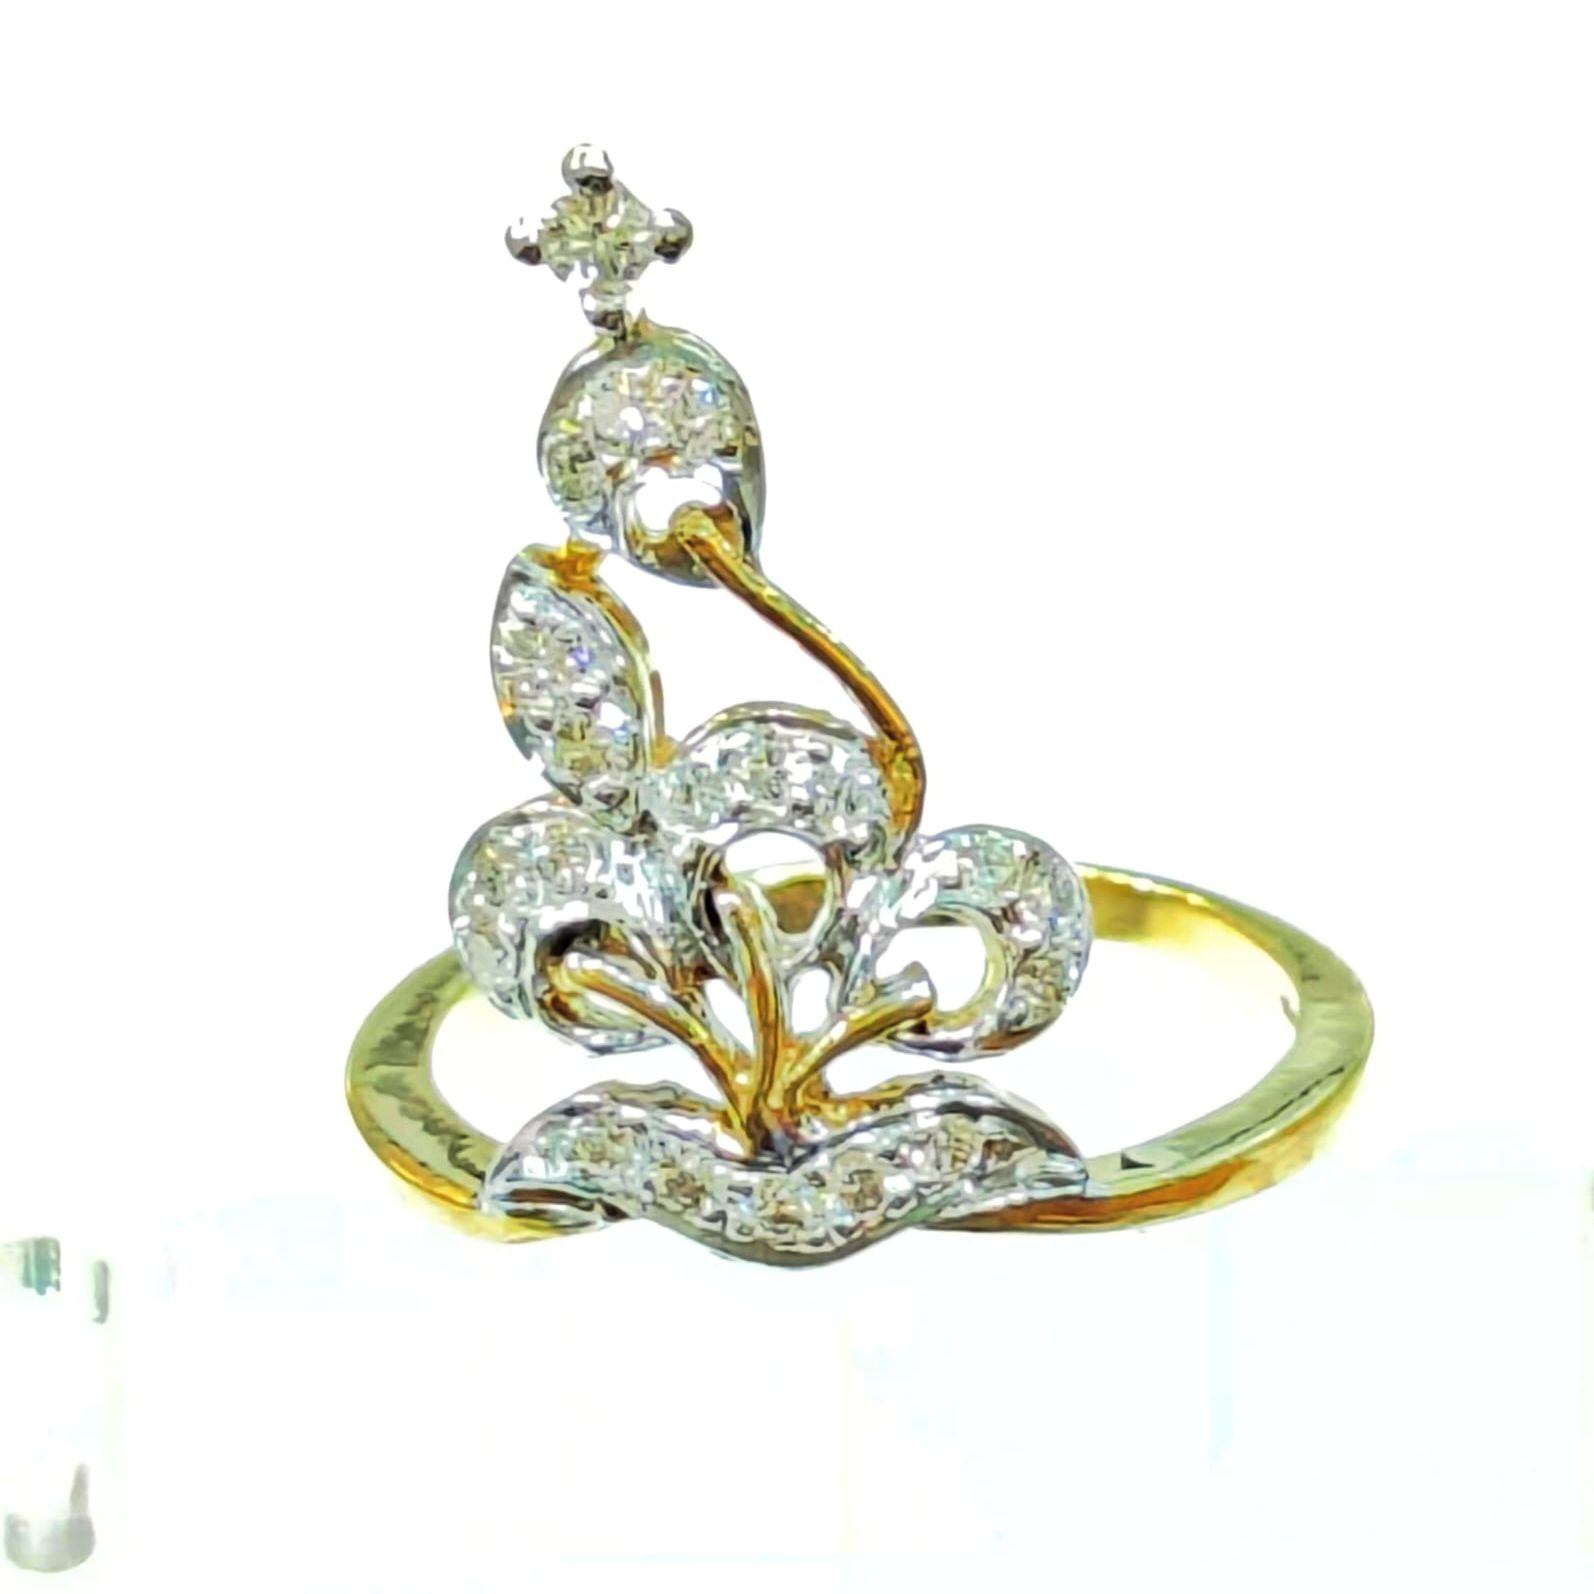 Buy Modern Heart Shape White Stone Gold Ring Design for Female